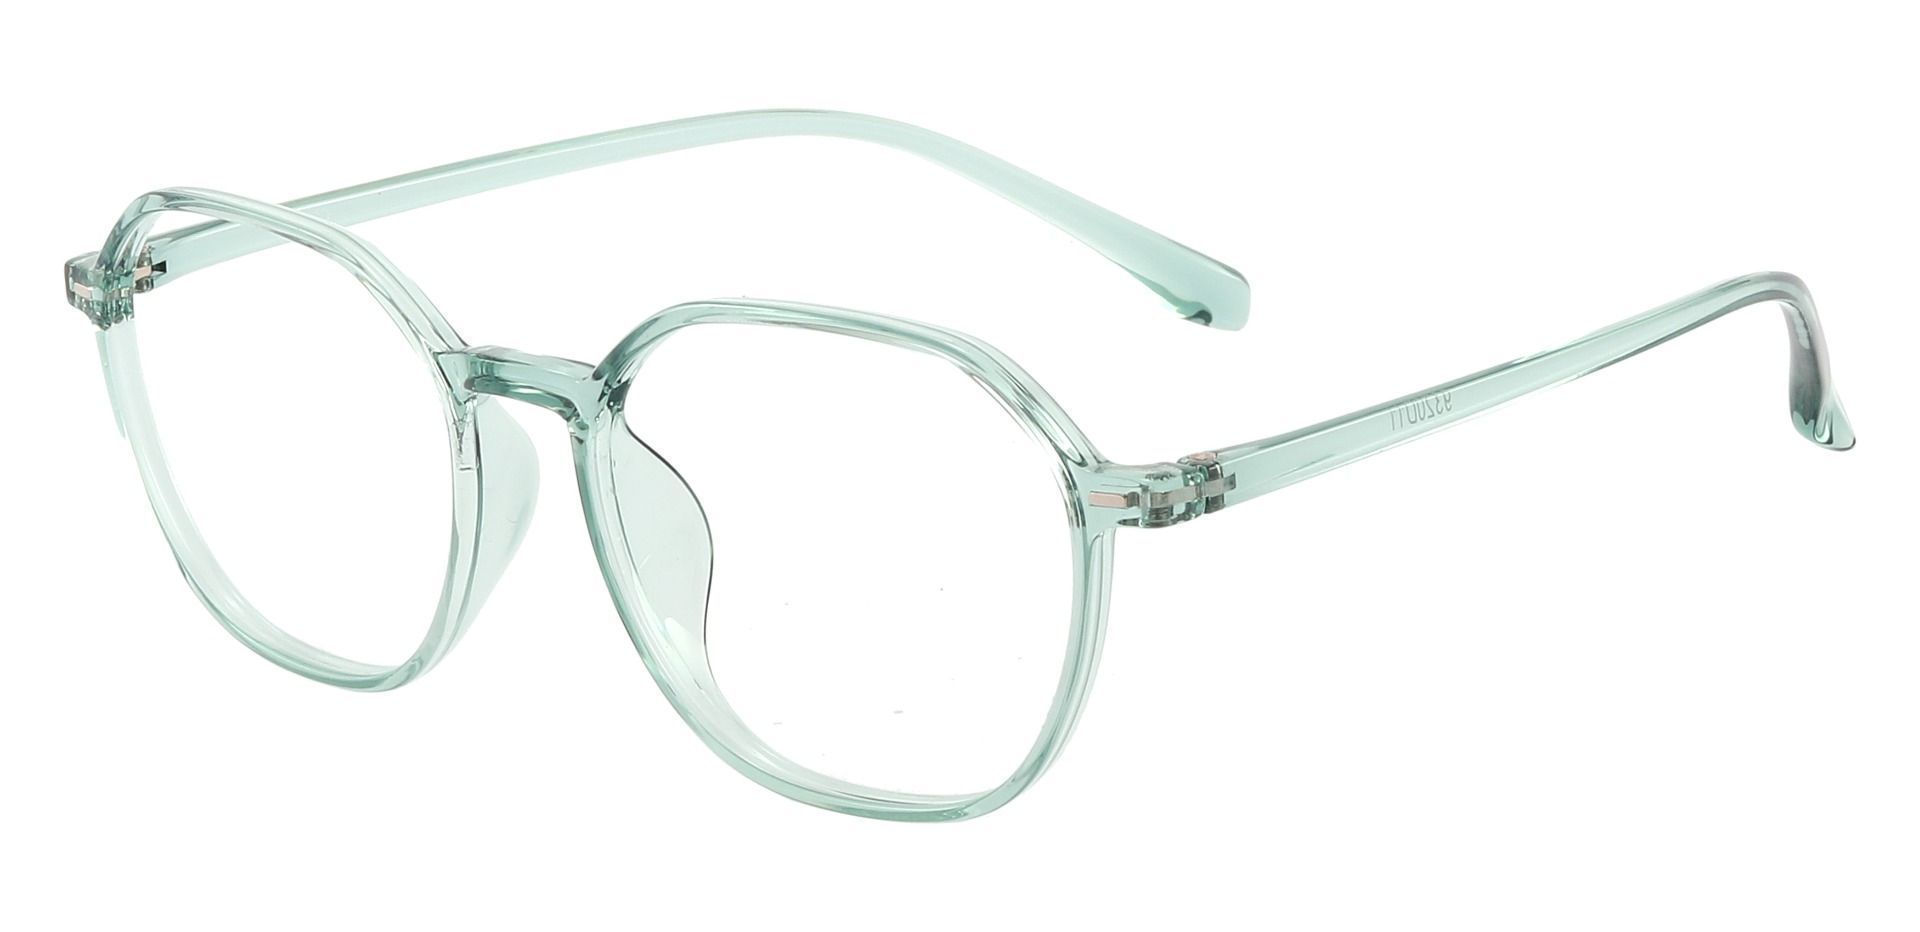 Detroit Geometric Eyeglasses Frame - Green